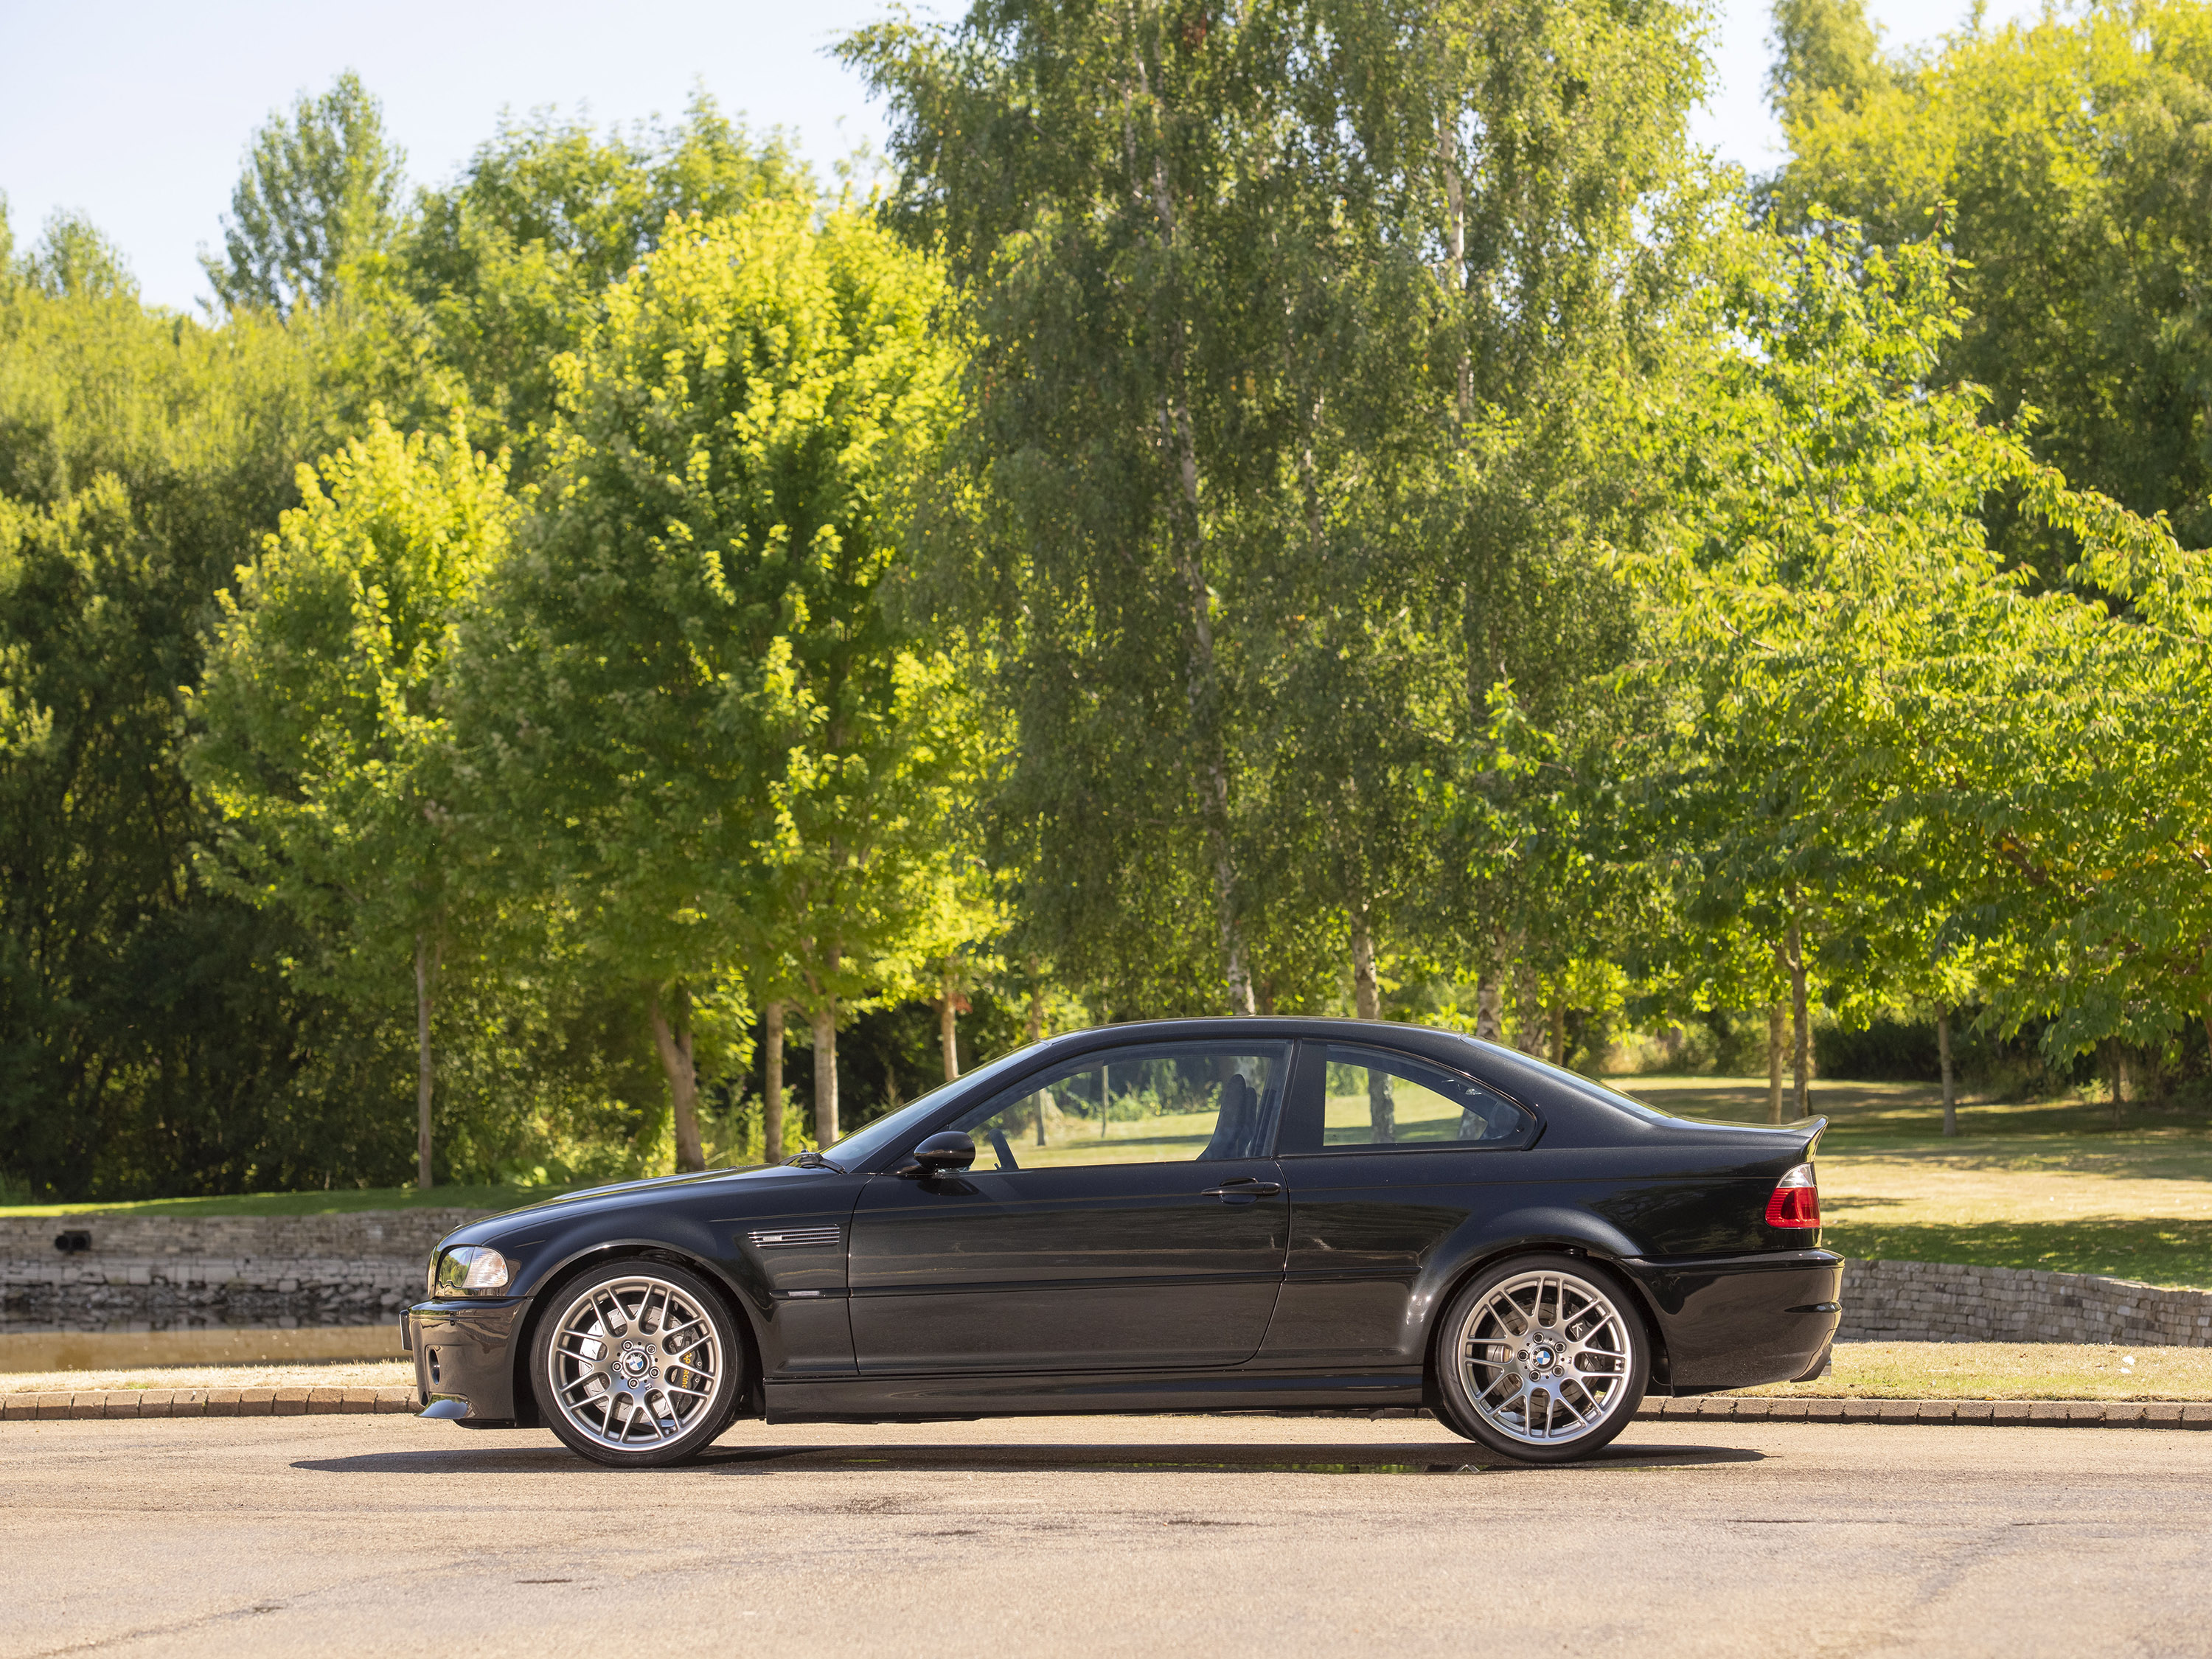 BMW M3 CSL E46: dieta a base di carbonio - Automobilismo